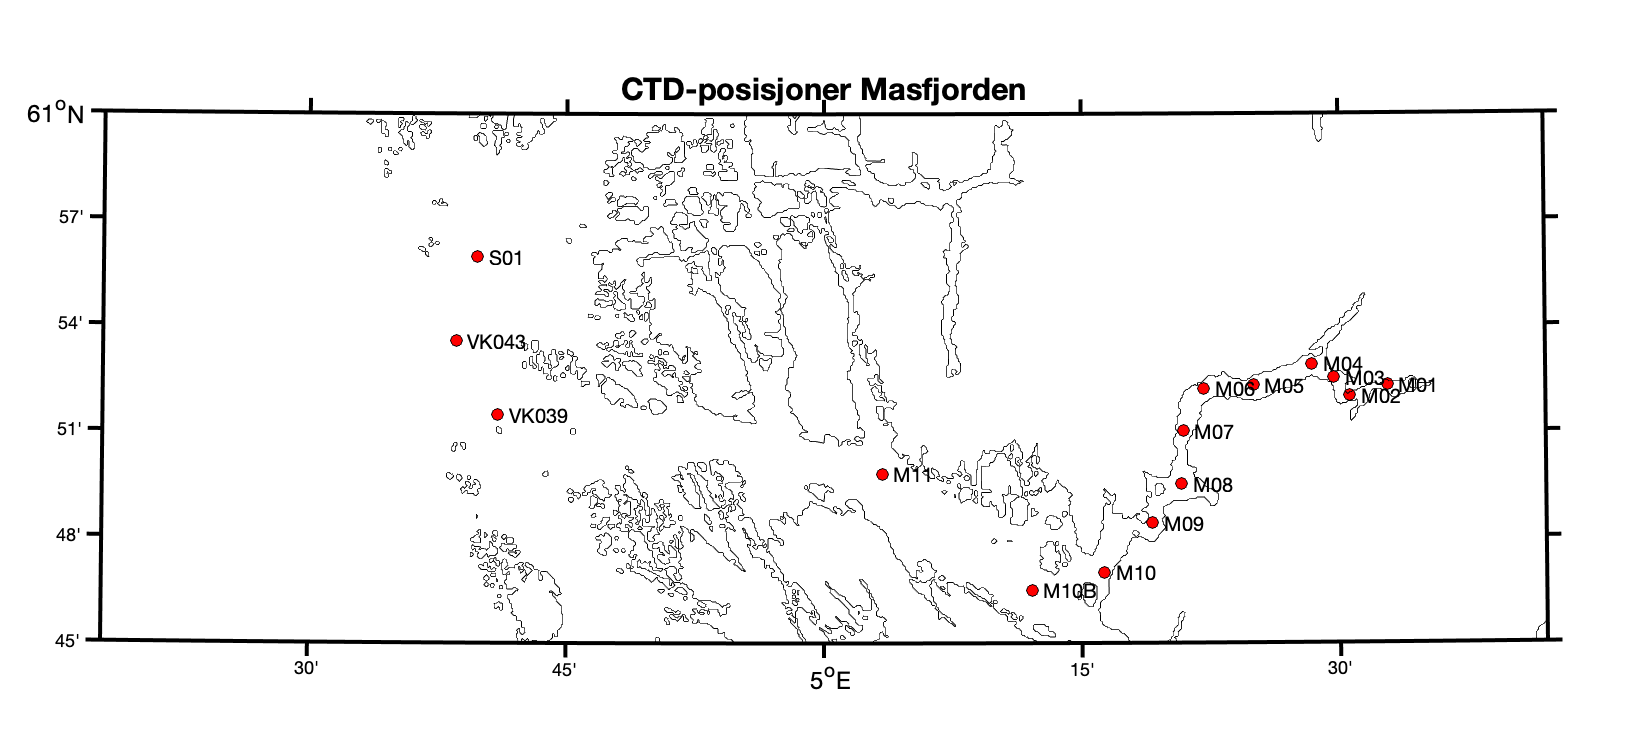 Figuren viser et kartutsnitt med de faste CTD-stasjonene i Masfjorden og Fensfjorden. Stasjonene (punkter) ligger jevnt plassert fra innerst i Masfjorden og utover til Fensfjorden (10 stasjoner), to stasjoner i Fensfjorden og tre ved utløpet av fjorden.